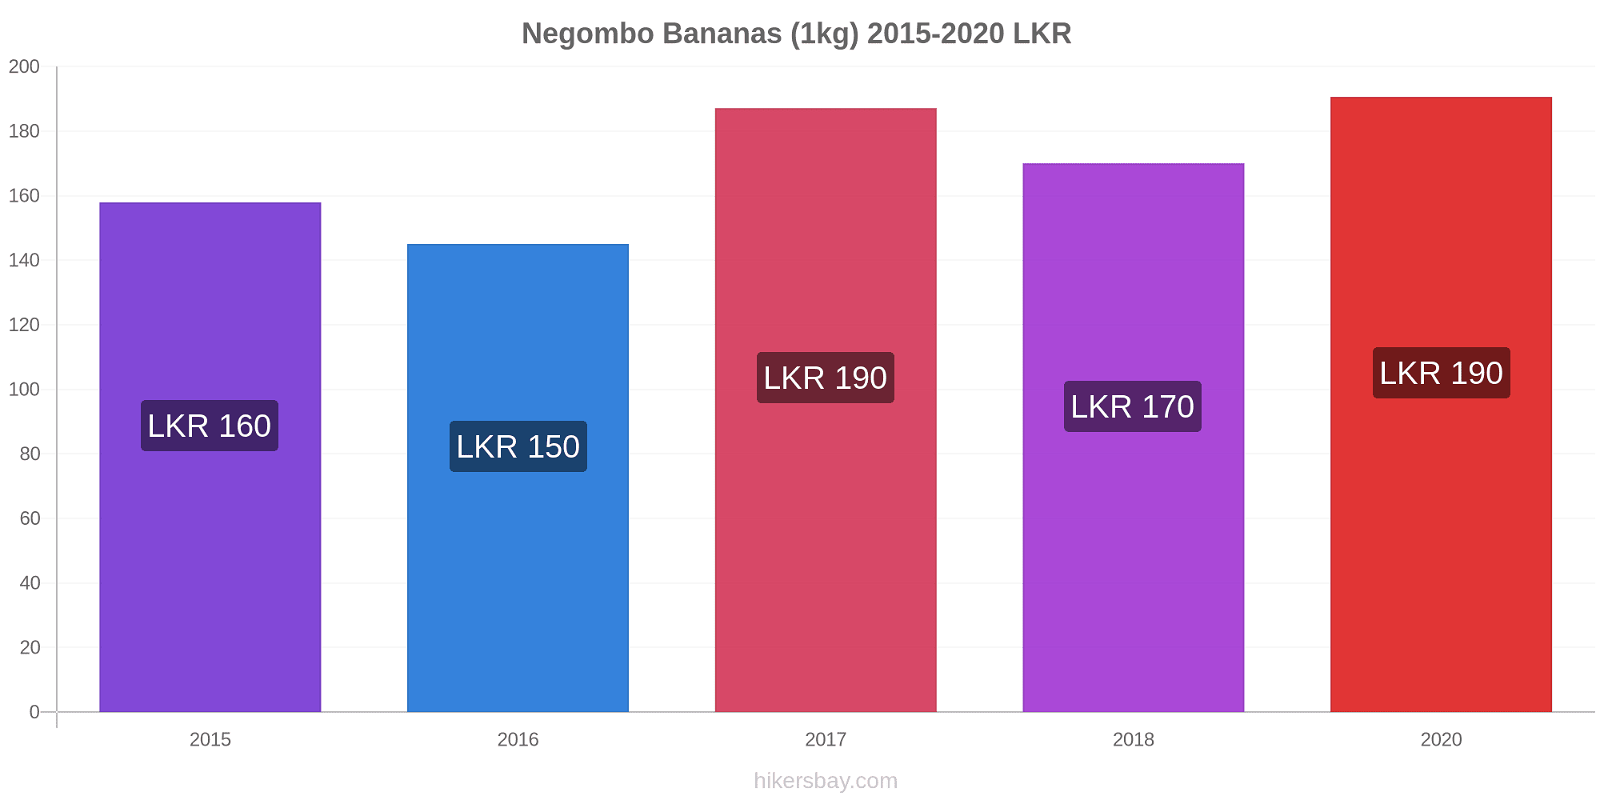 Negombo variação de preço Banana (1kg) hikersbay.com